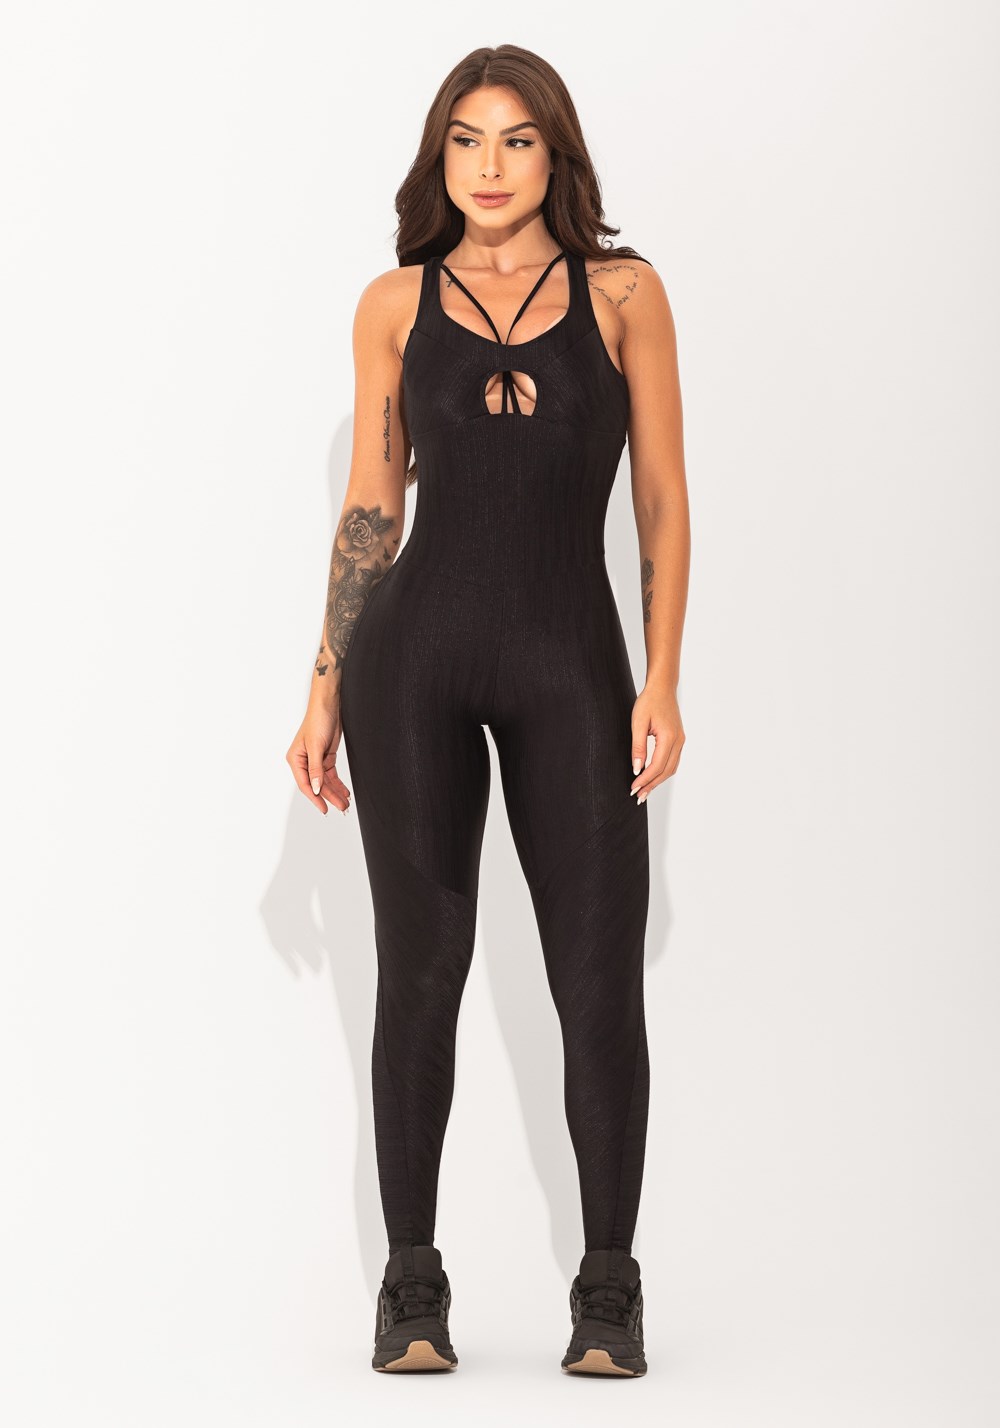 Macacão fitness feminino preto texturizado cut-out com recortes elegan